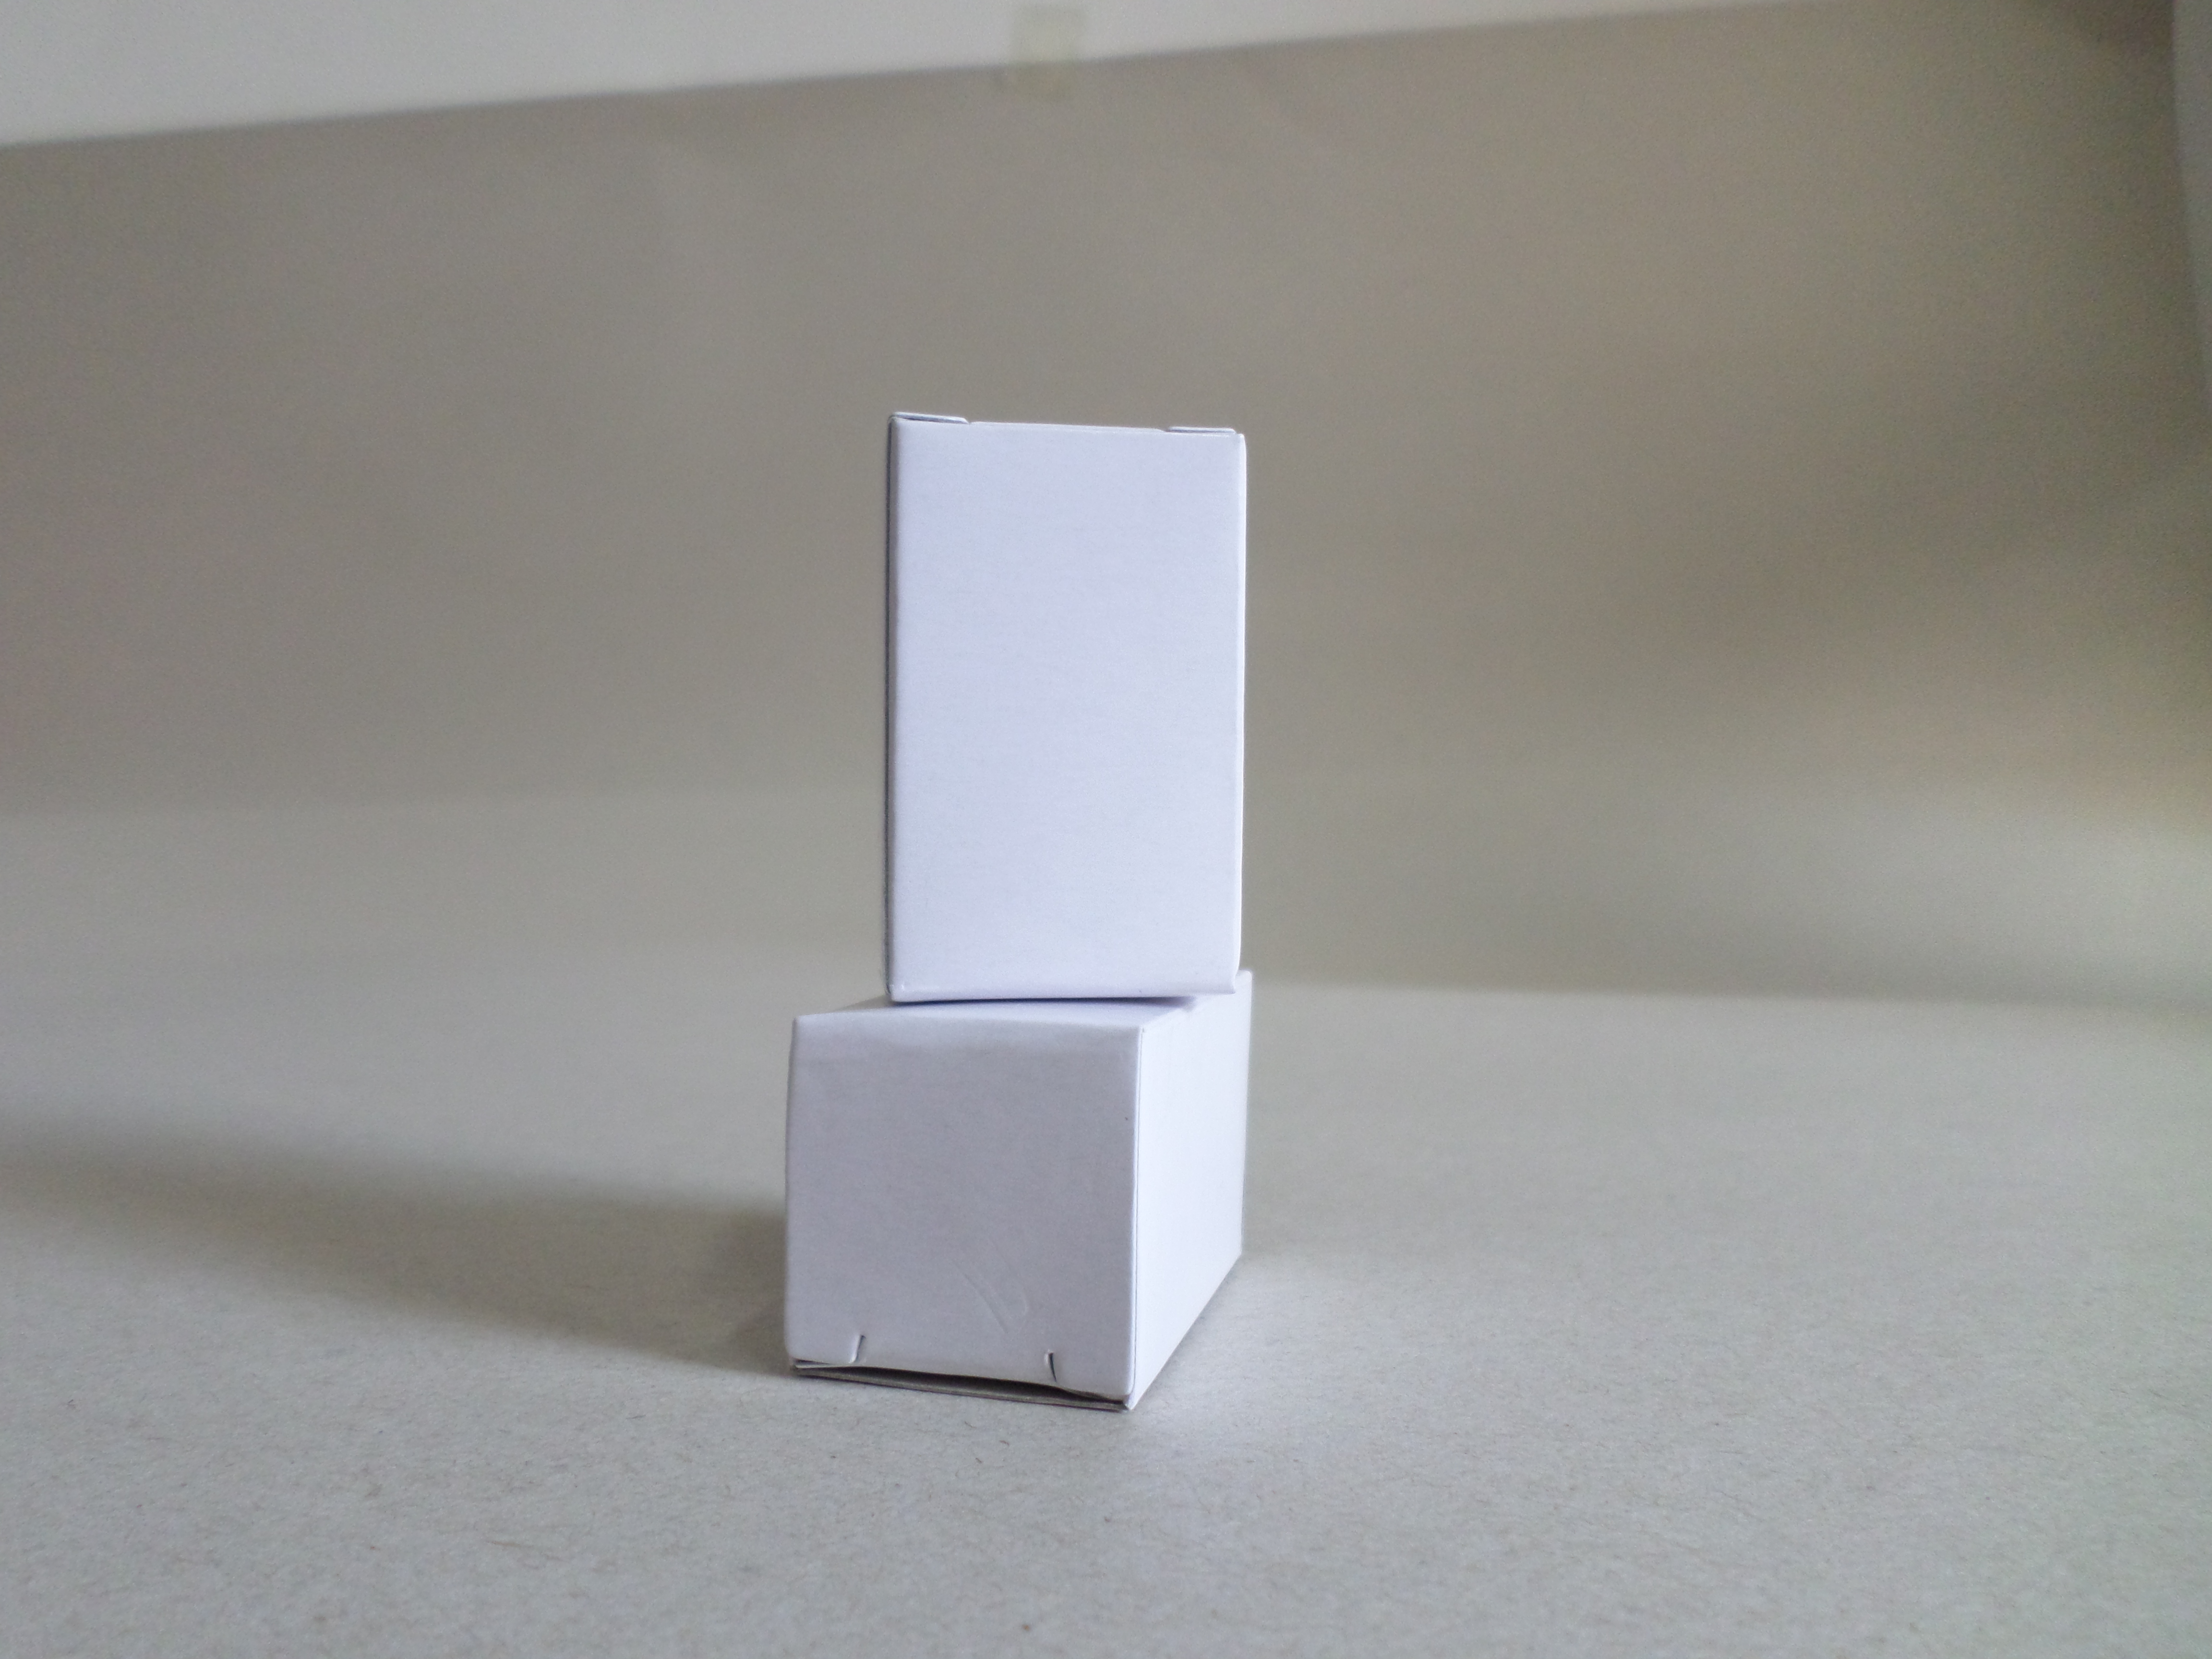 厂家直销供应 白盒厂家 白盒包装盒 LED灯泡白盒纸盒 通用包装盒图片